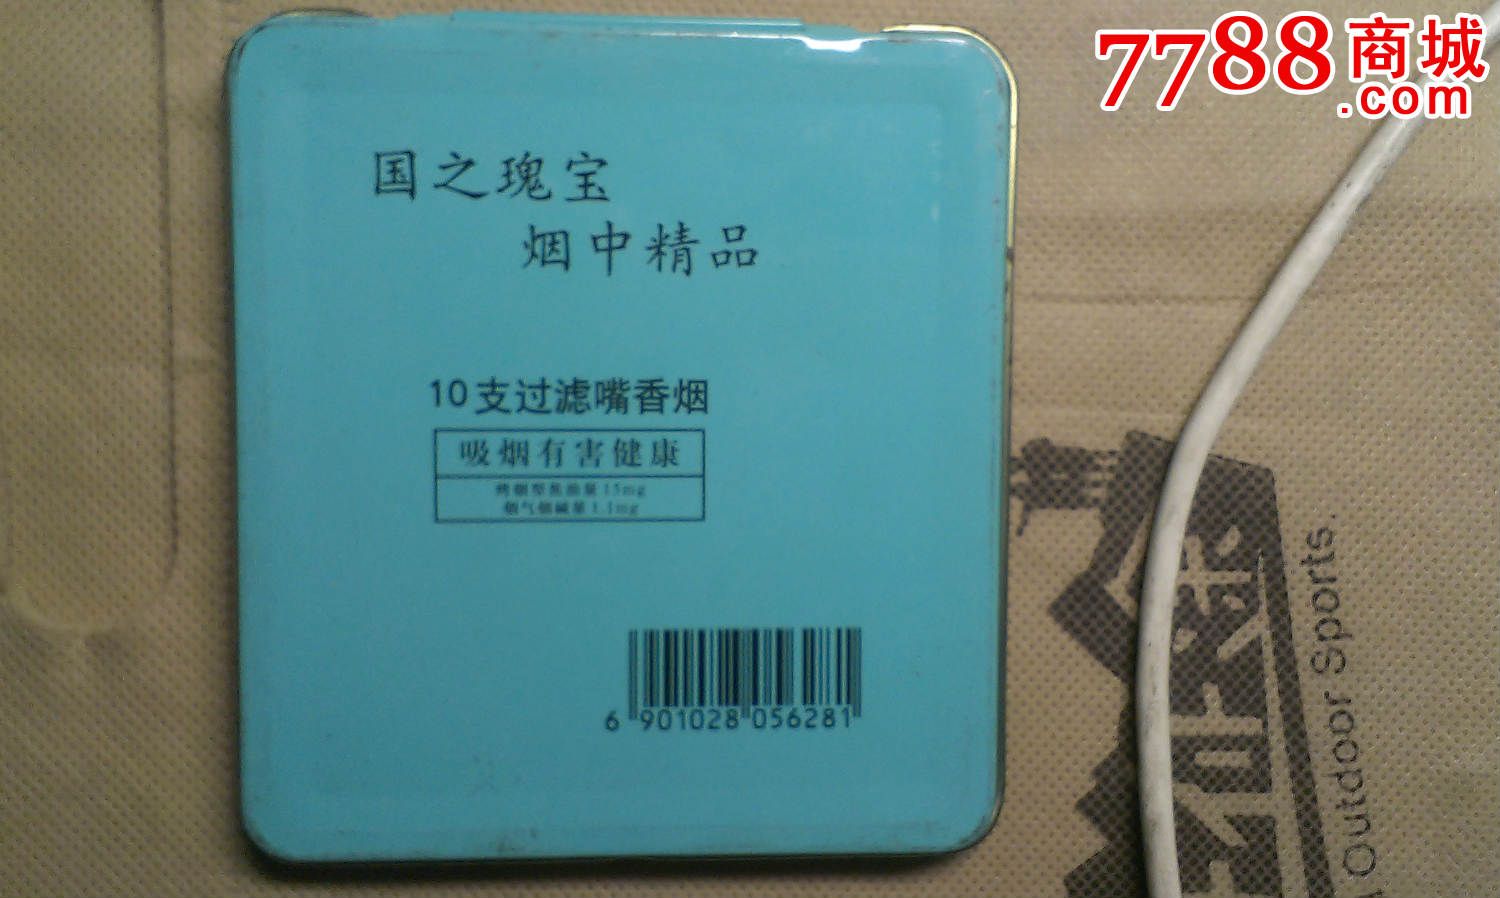 早期小熊猫铁质硬盒烟标。-价格:20元-se2868